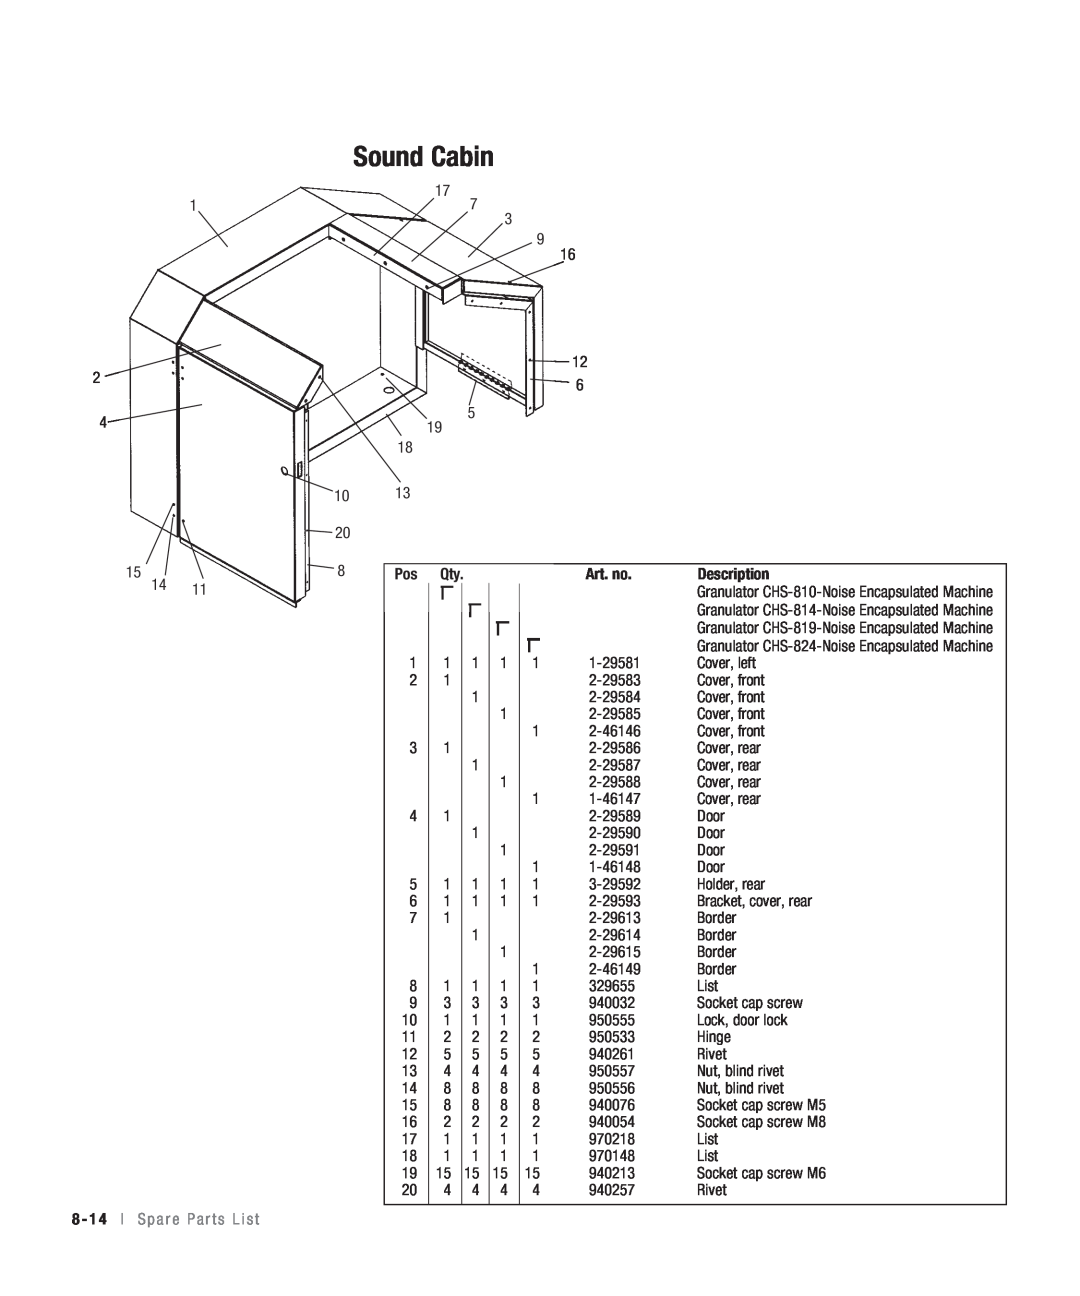 Conair CHS-810 manual Sound Cabin, 8 - 14 l S p a r e P a r t s L i s t, Art. no, Description 